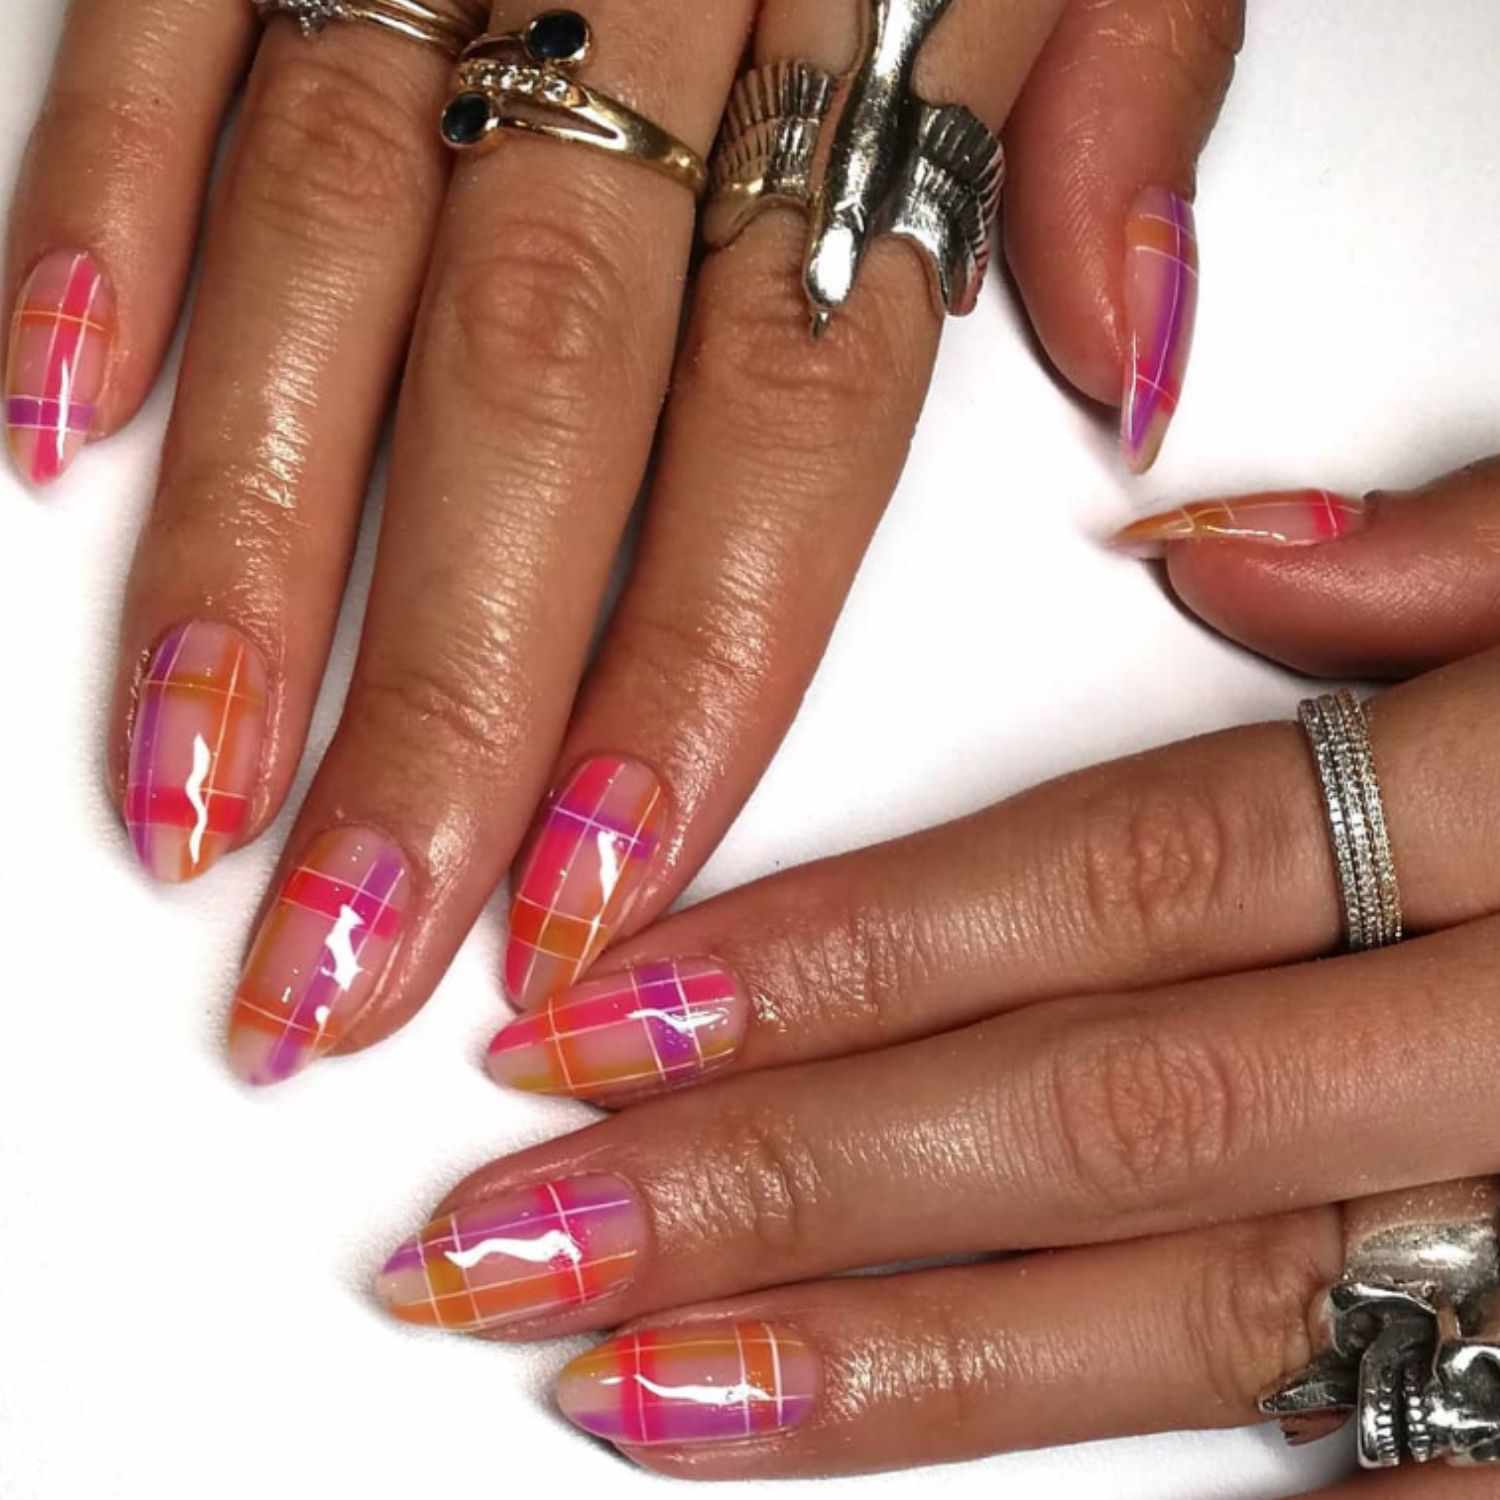 亮粉色、紫色和橙色的格纹指甲